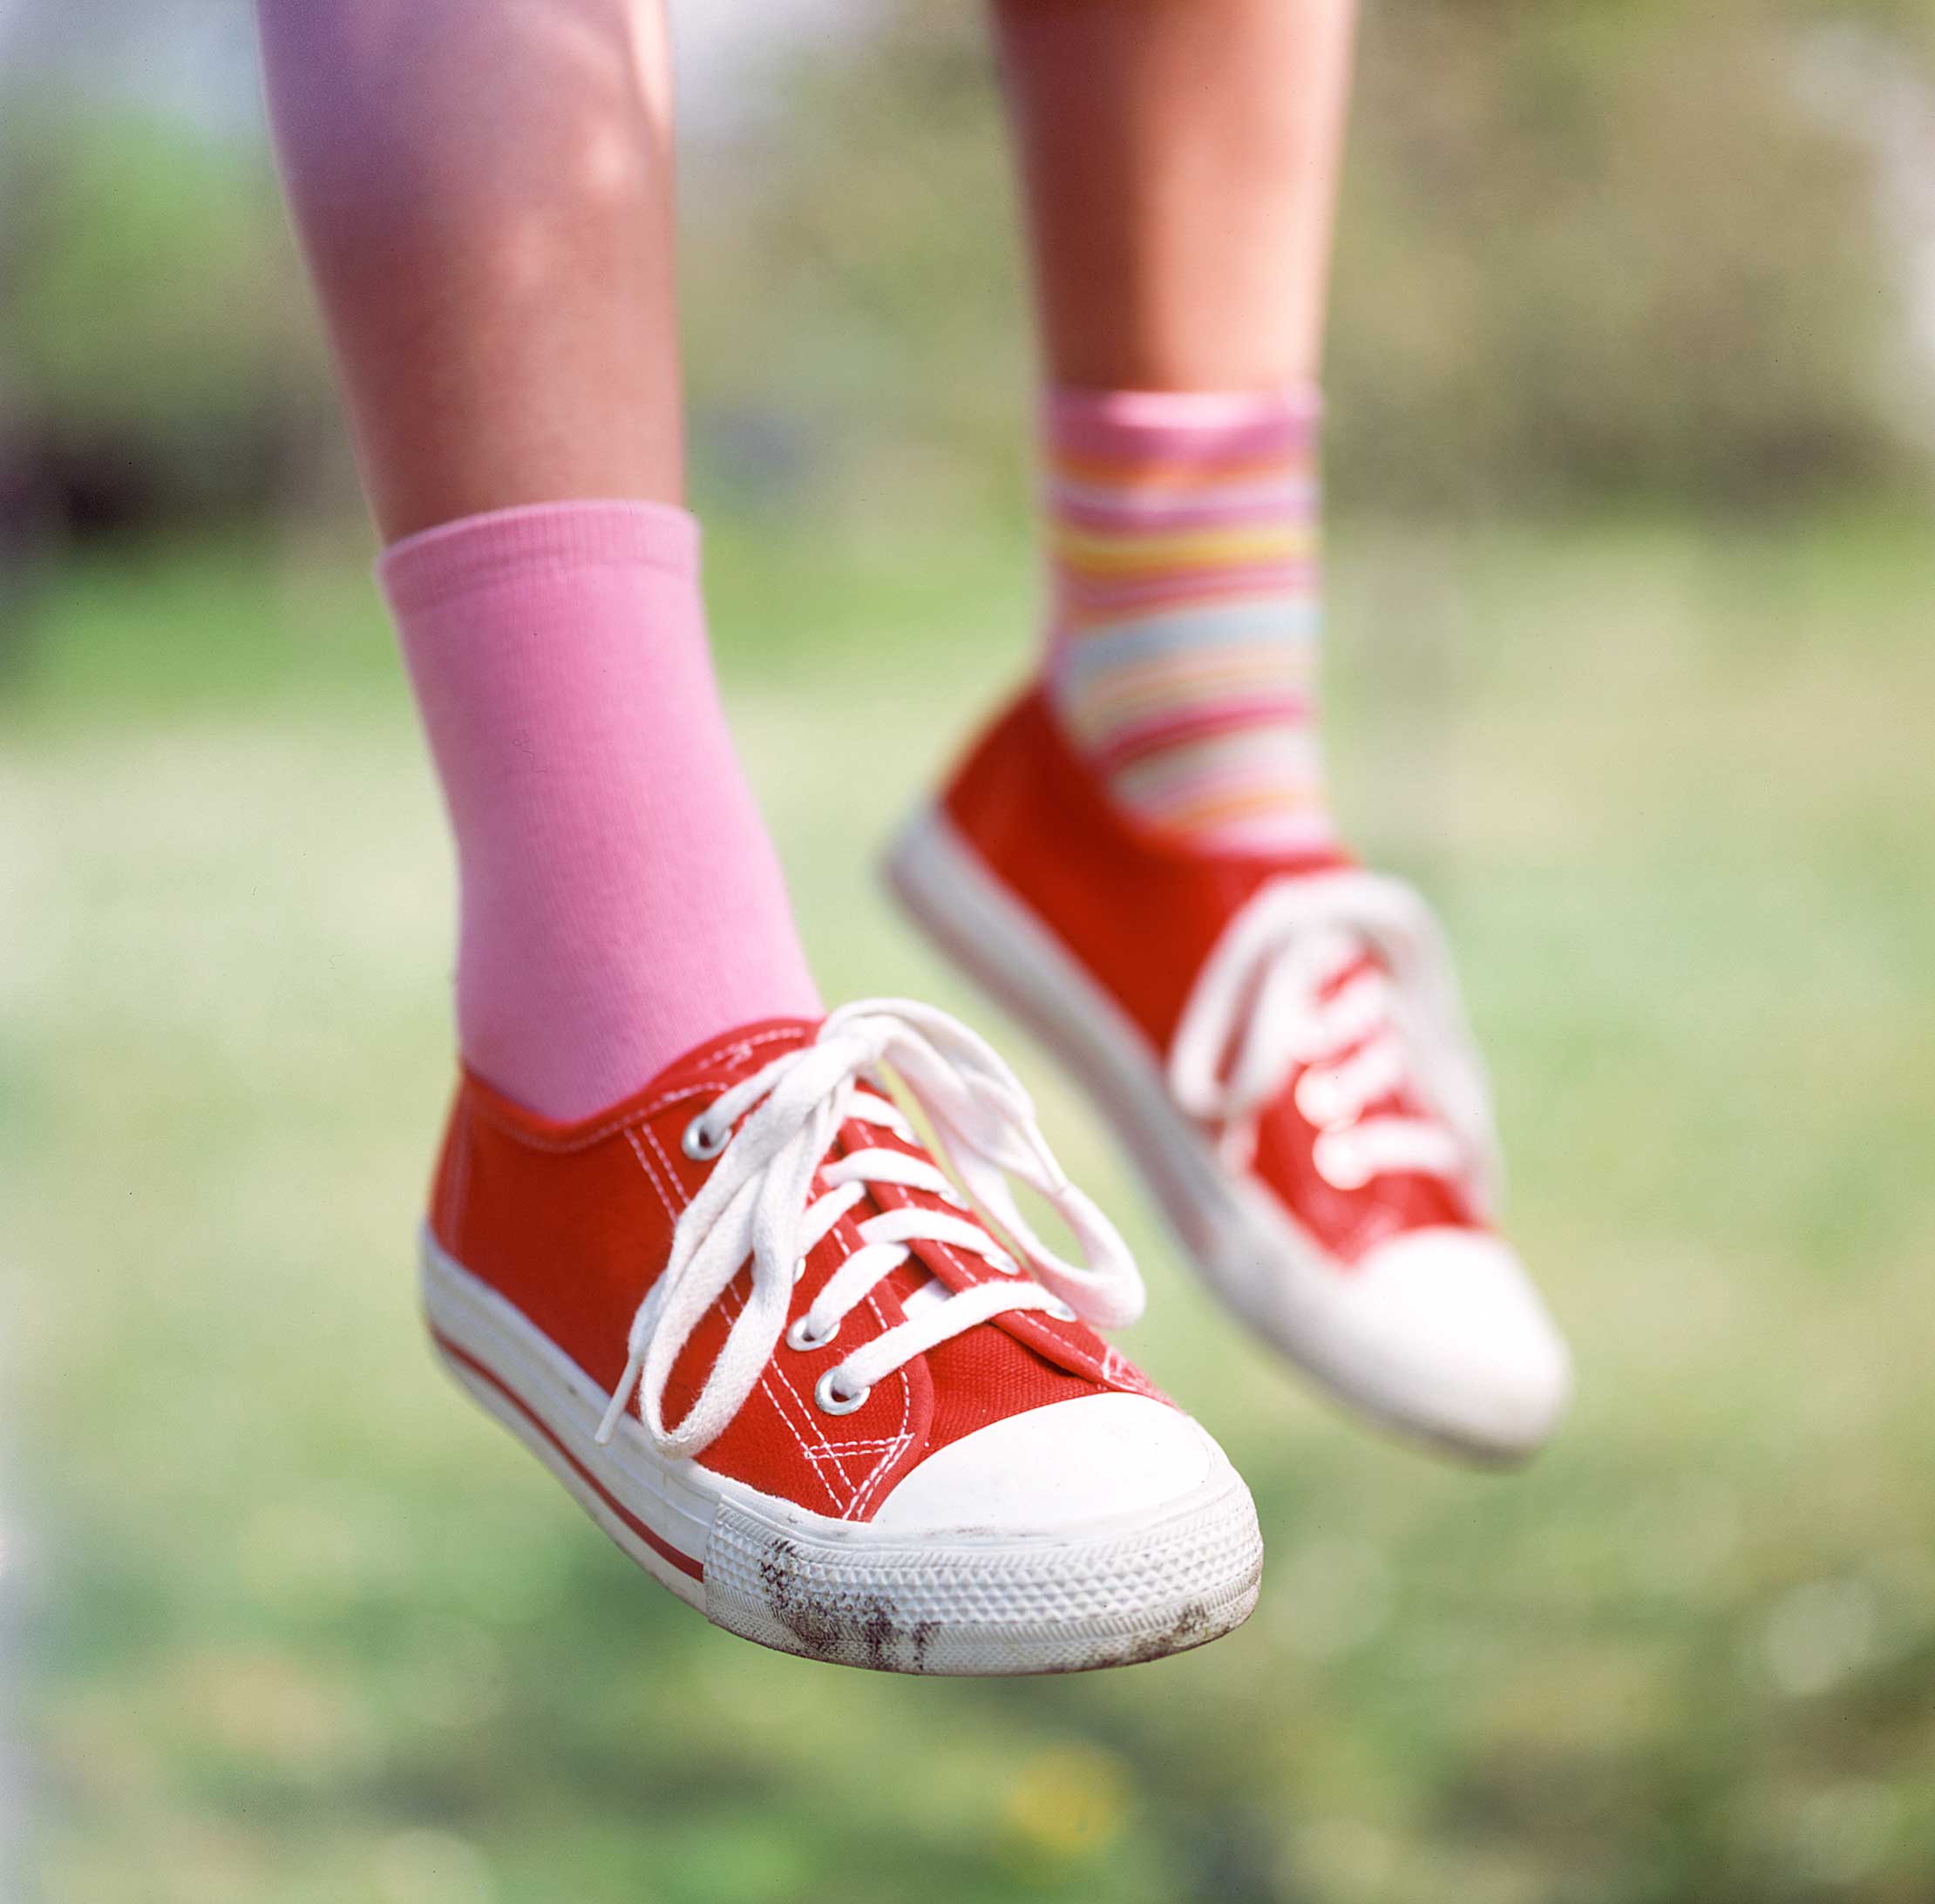 Kind trägt rote Stoffturnschuhe und verschiedene bunte Socken